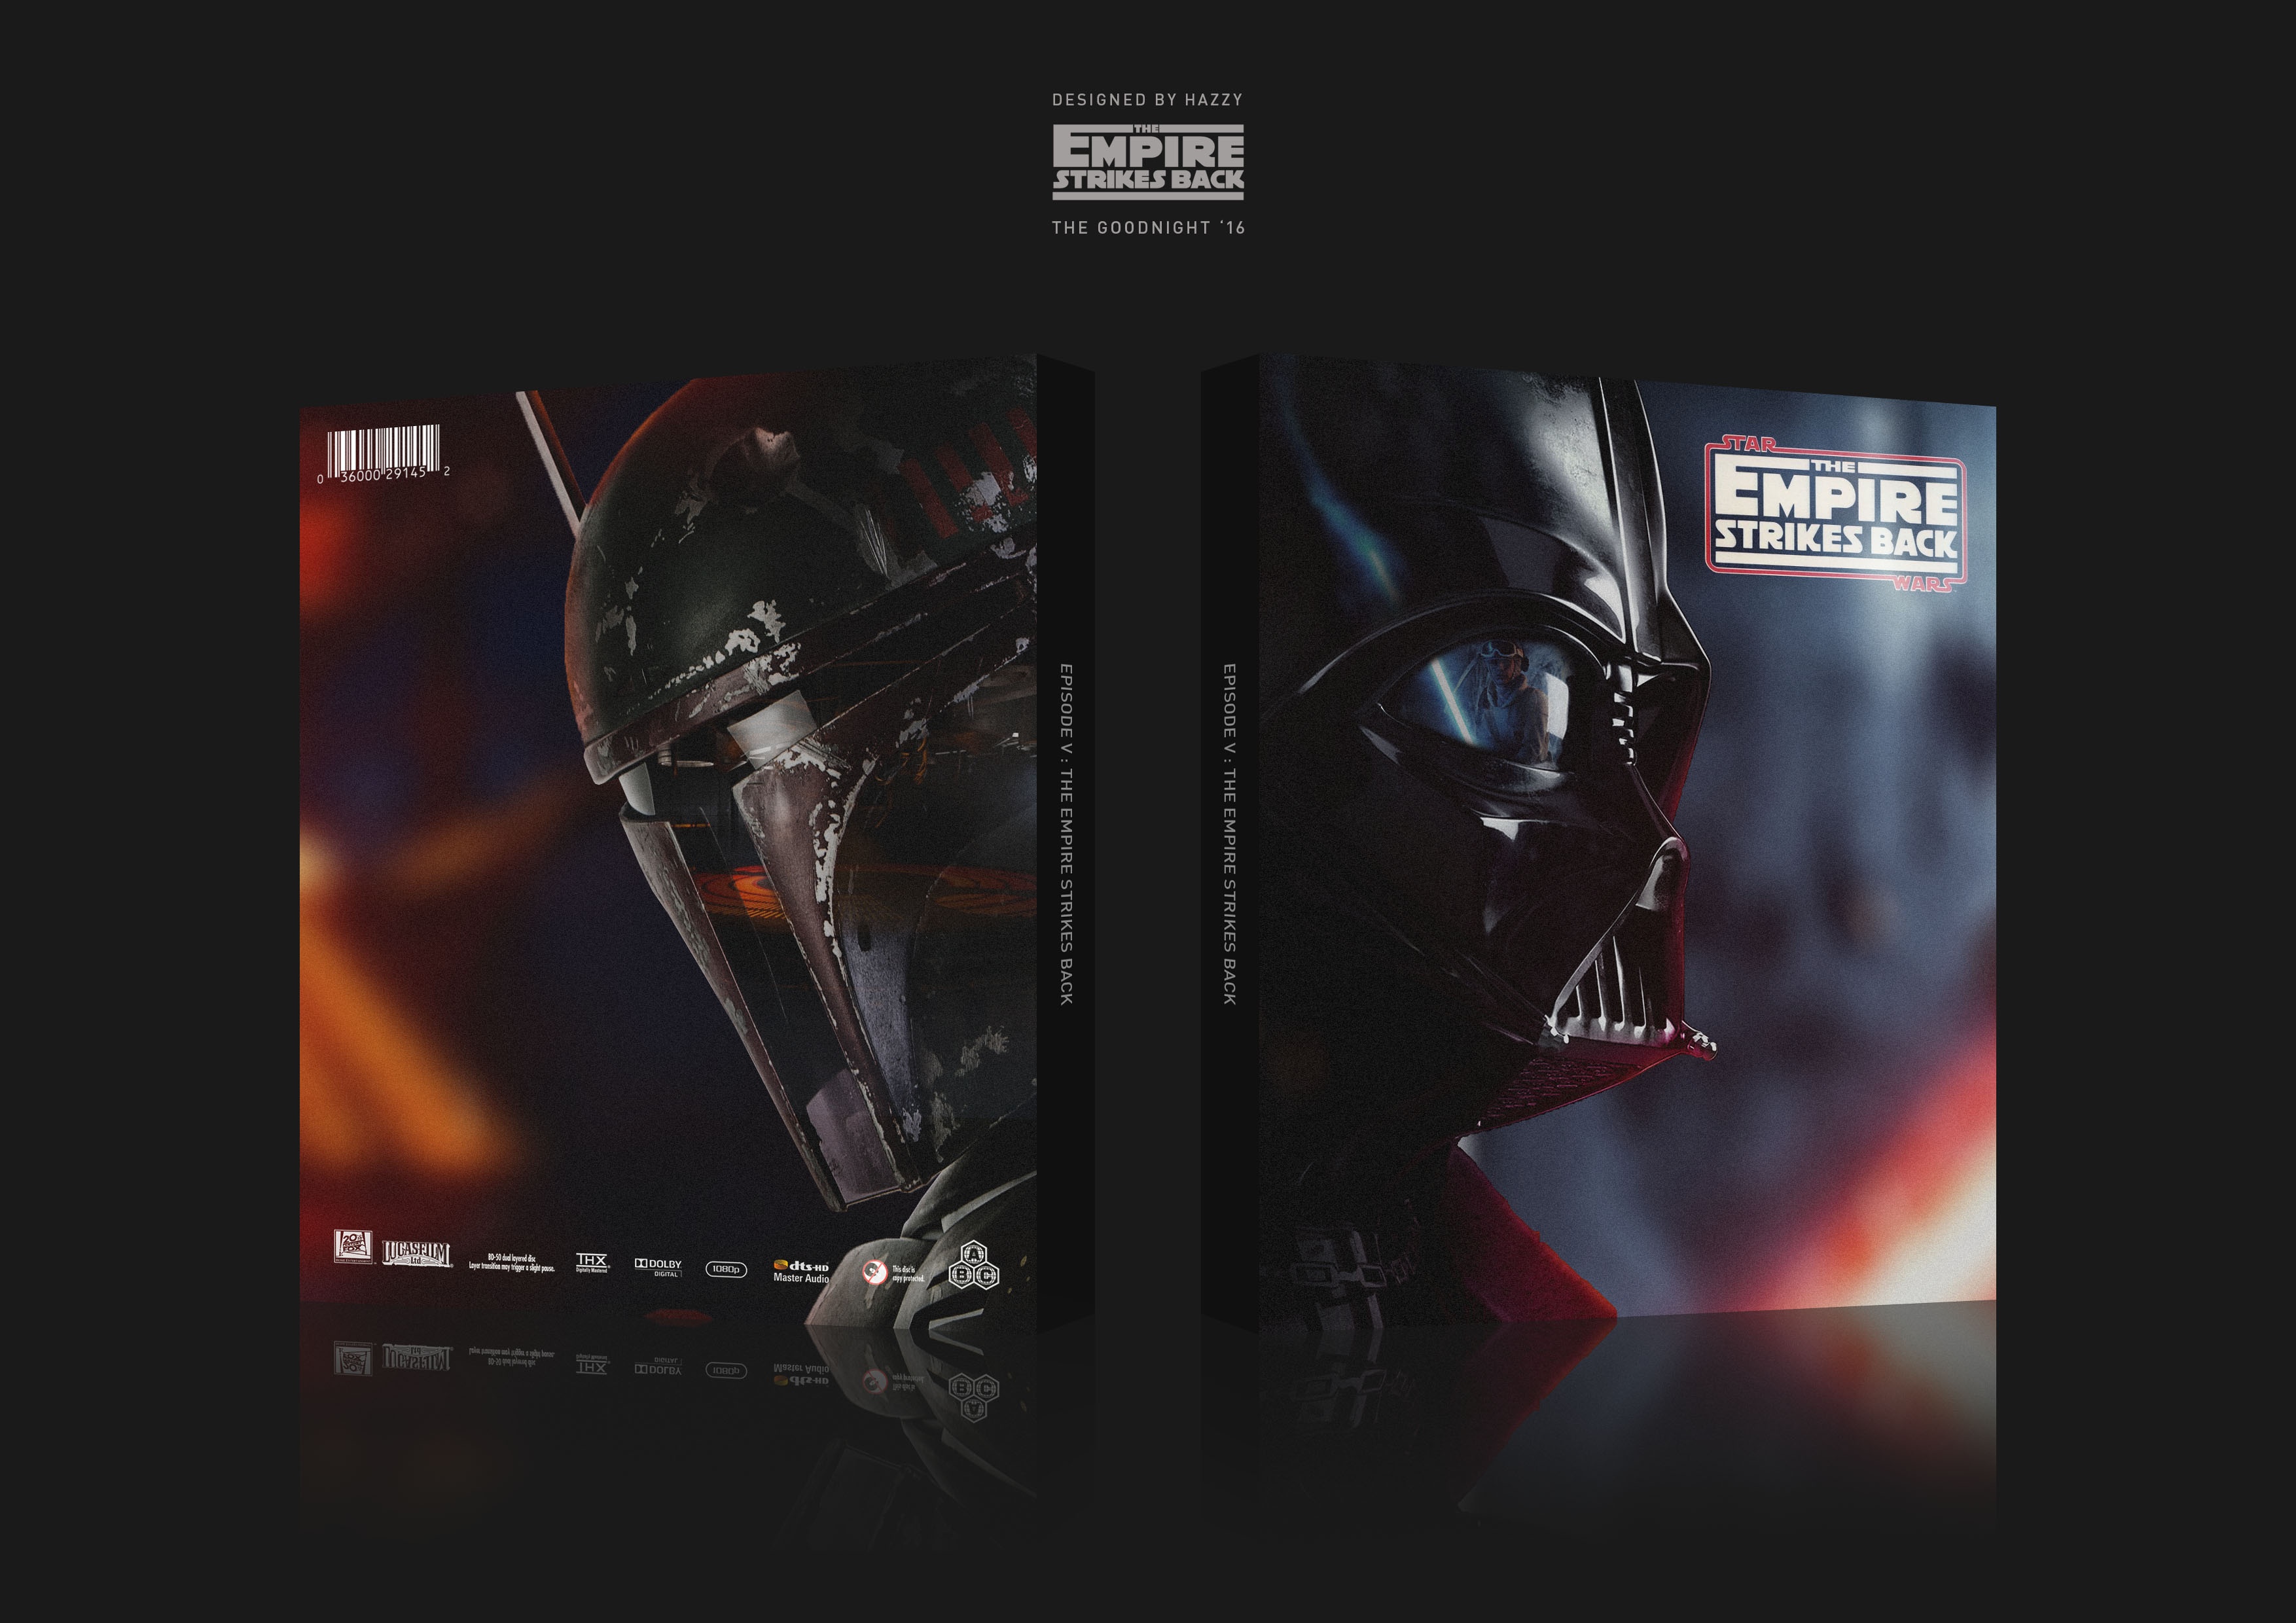 The Empire Strikes Back box cover